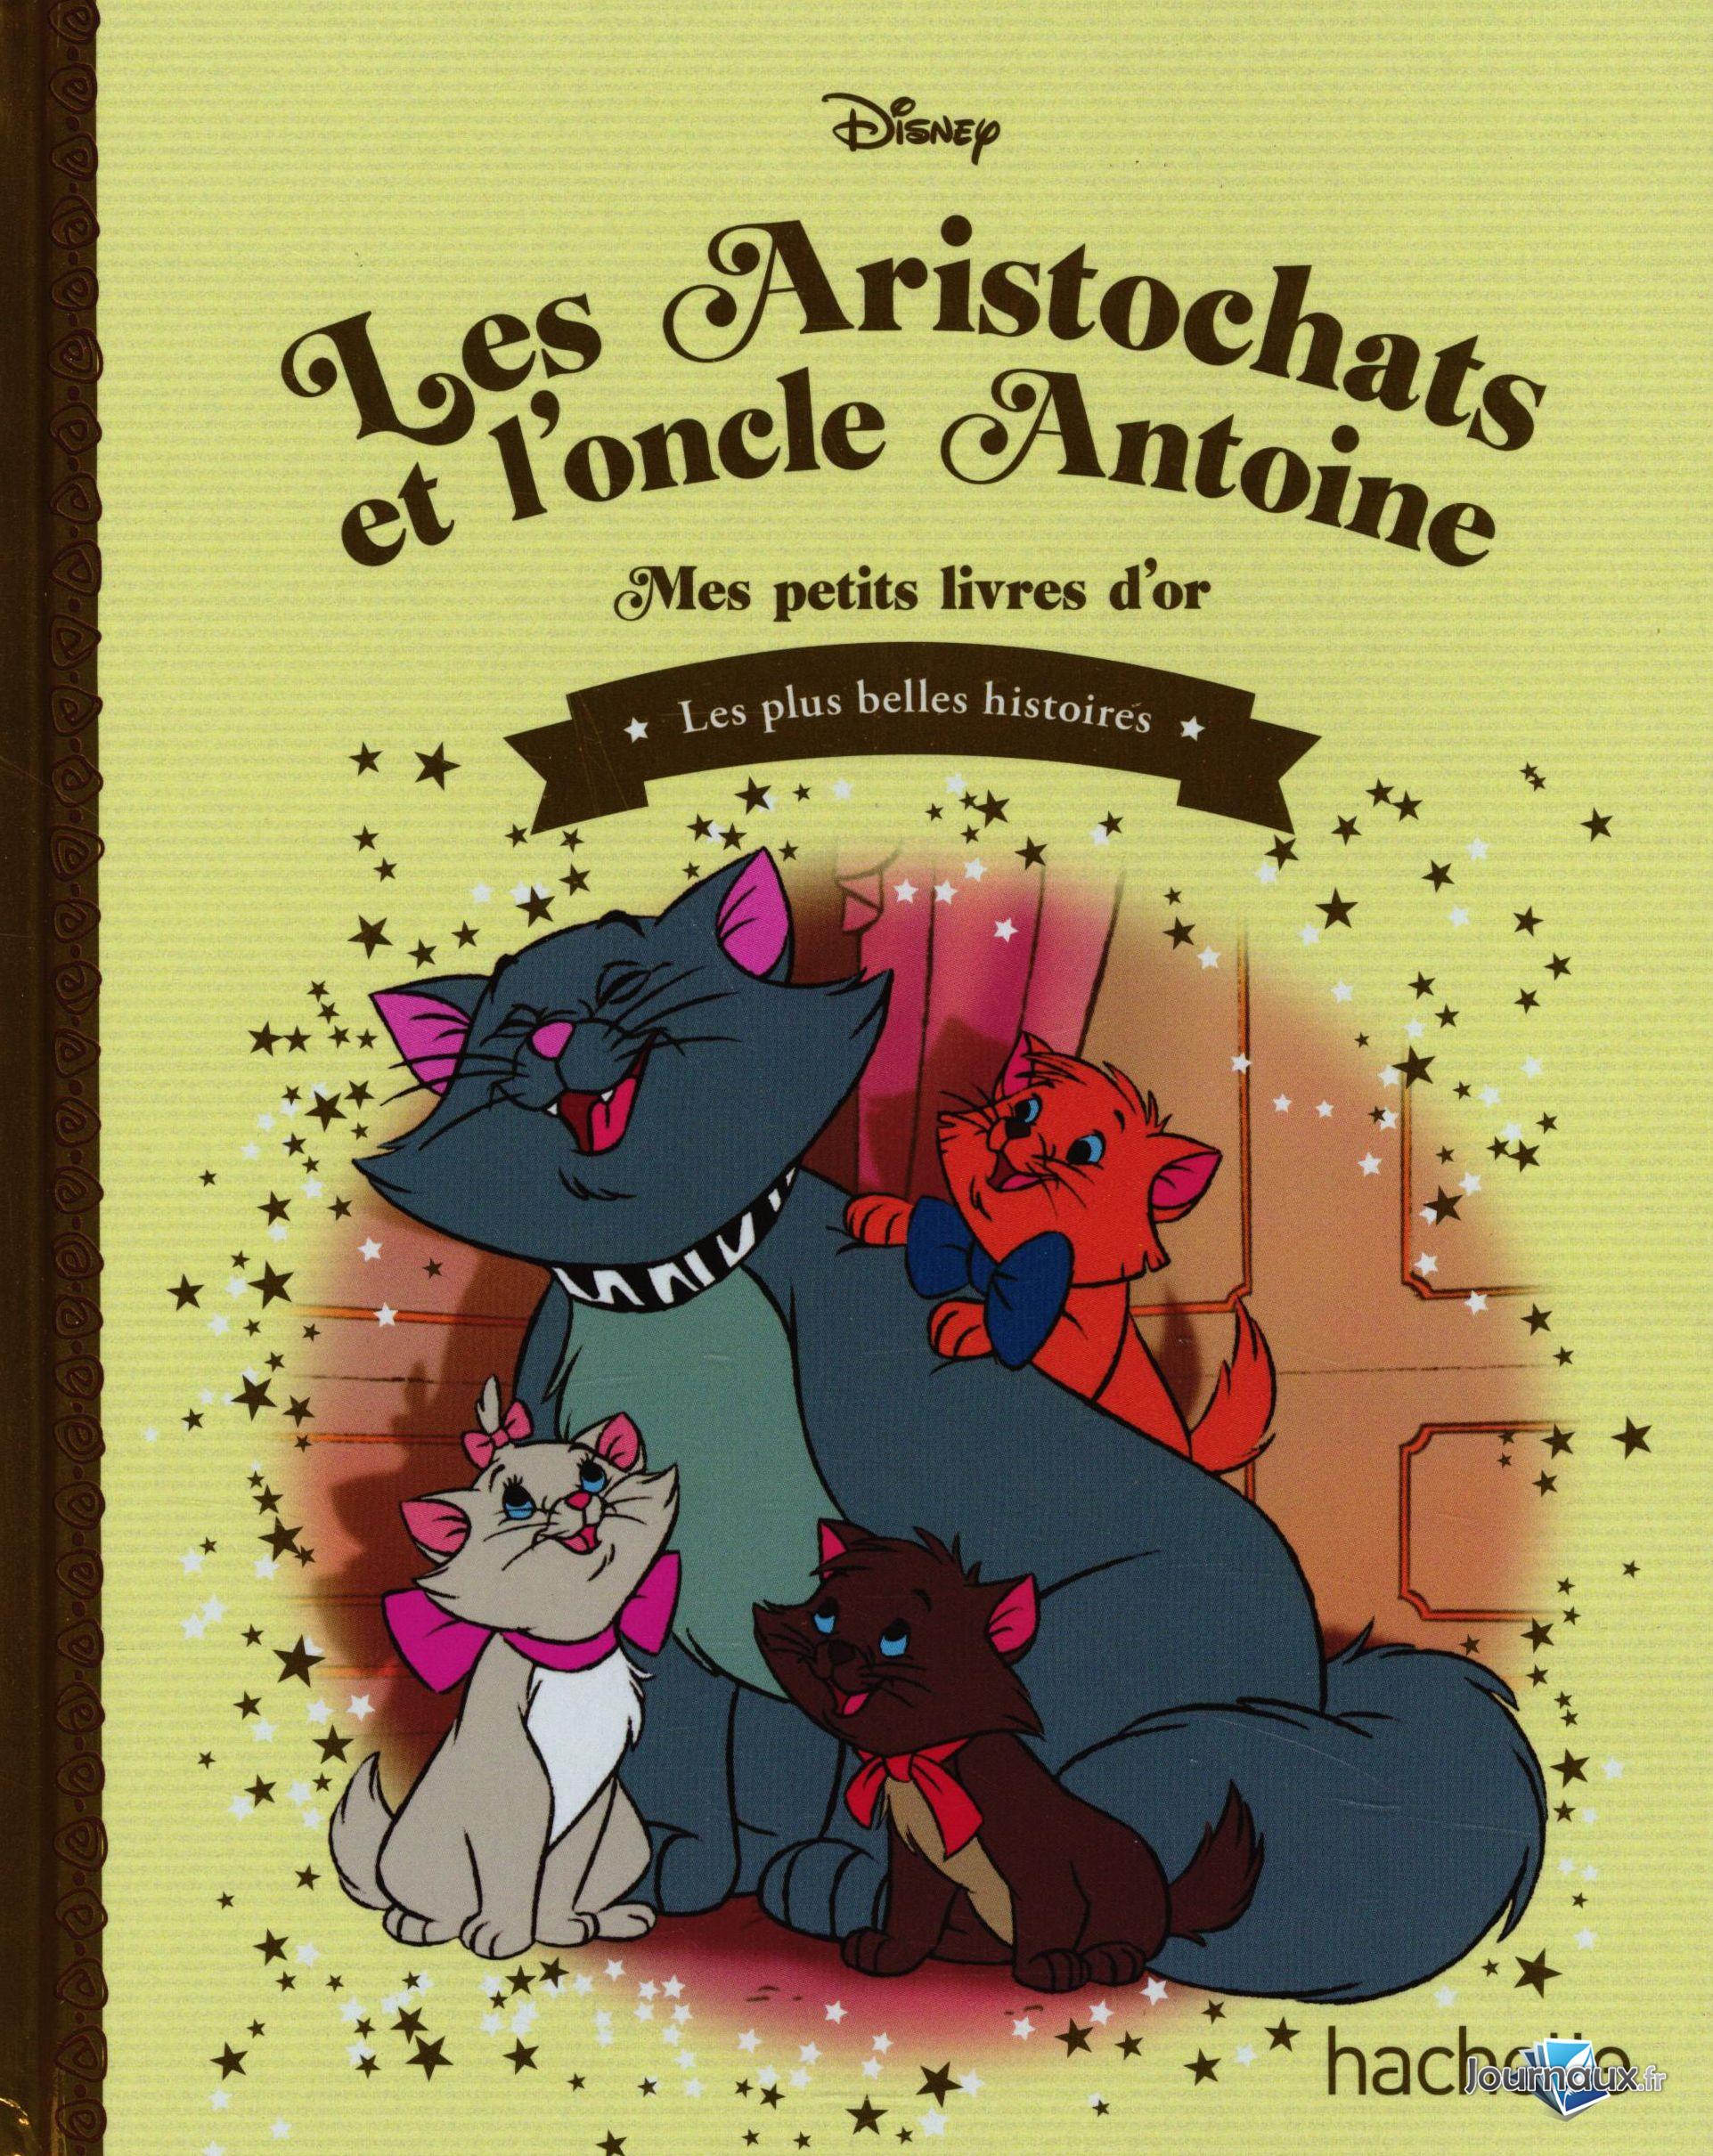 Les aristochats : Disney - 2017174610 - Livres pour enfants dès 3